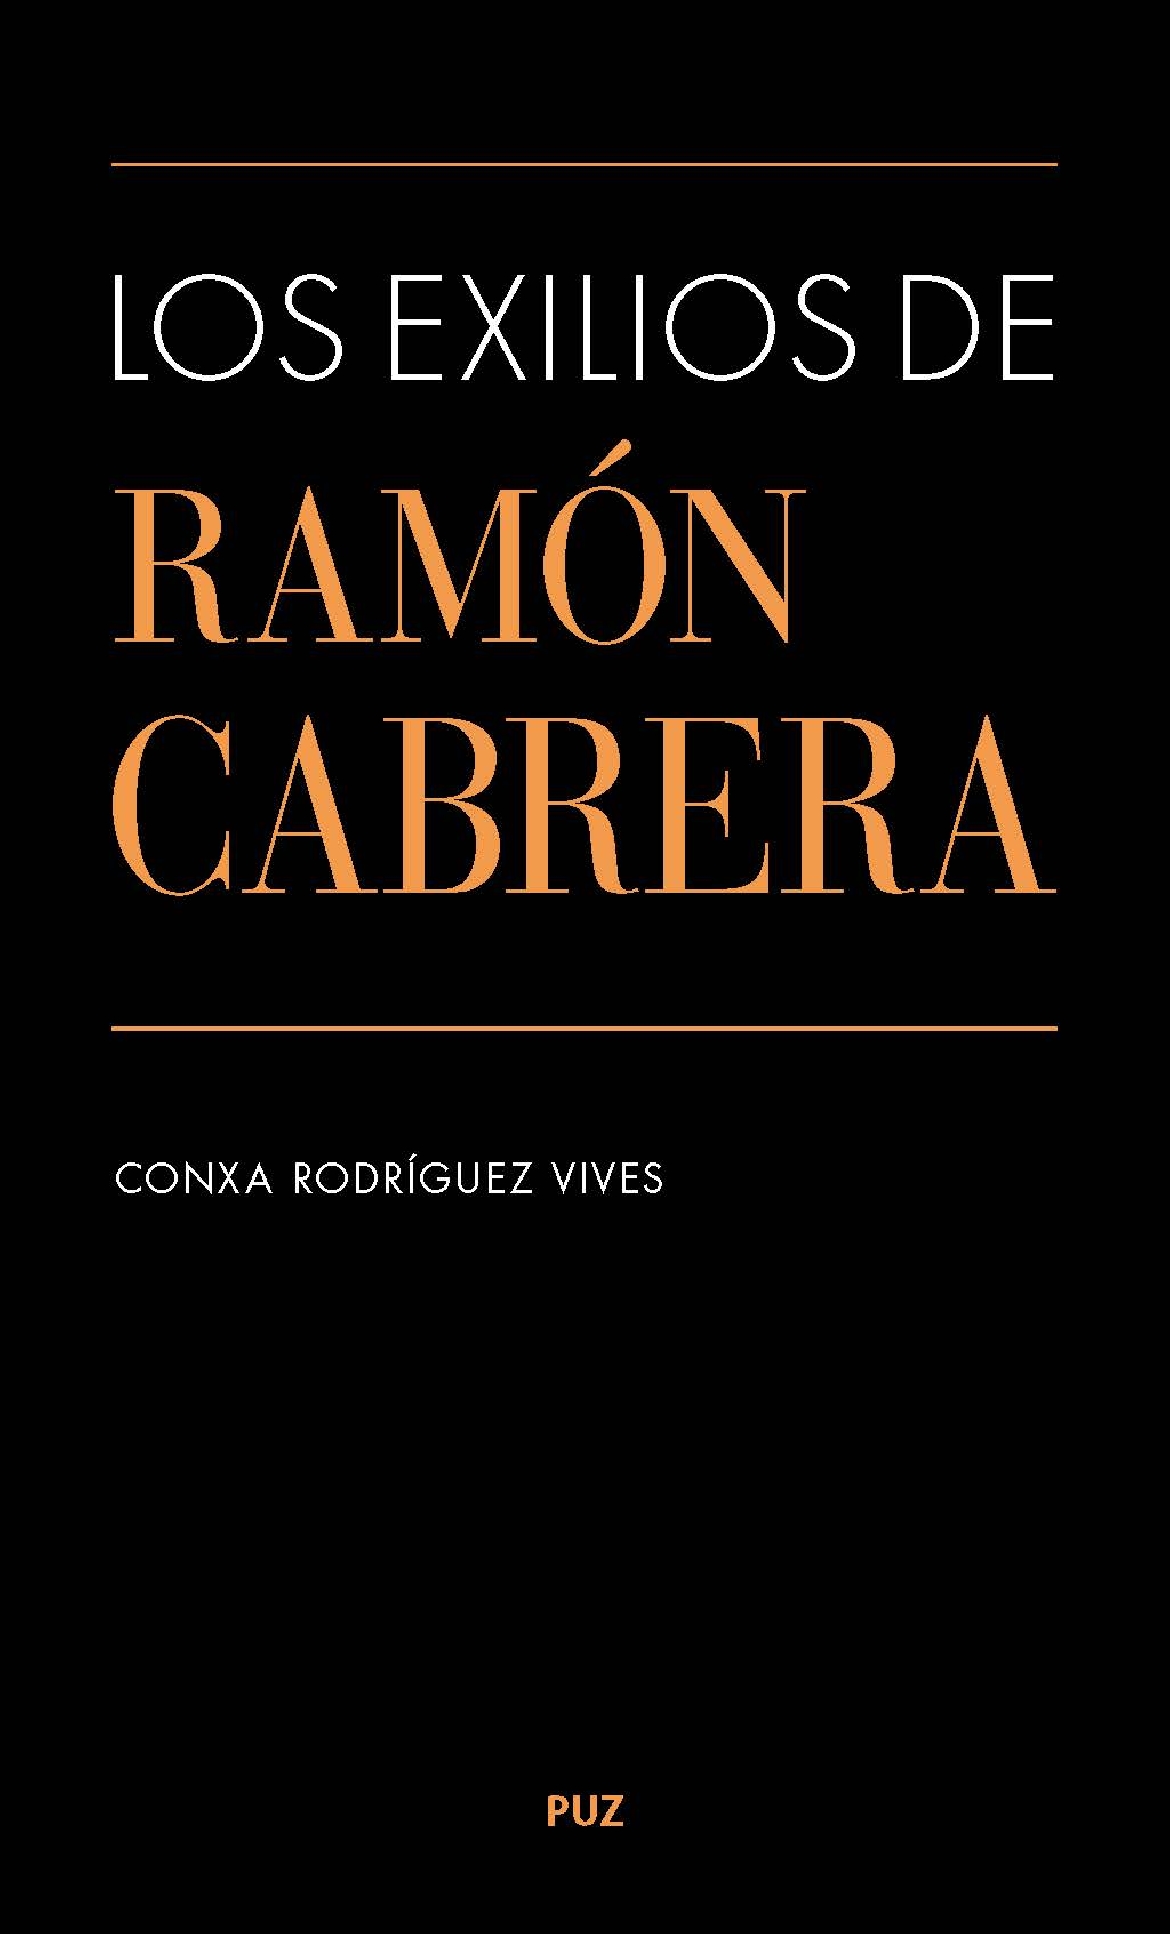 Presentación del libro LOS EXILIOS DE RAMÓN CABRERA, de Conxa Rodríguez Vives